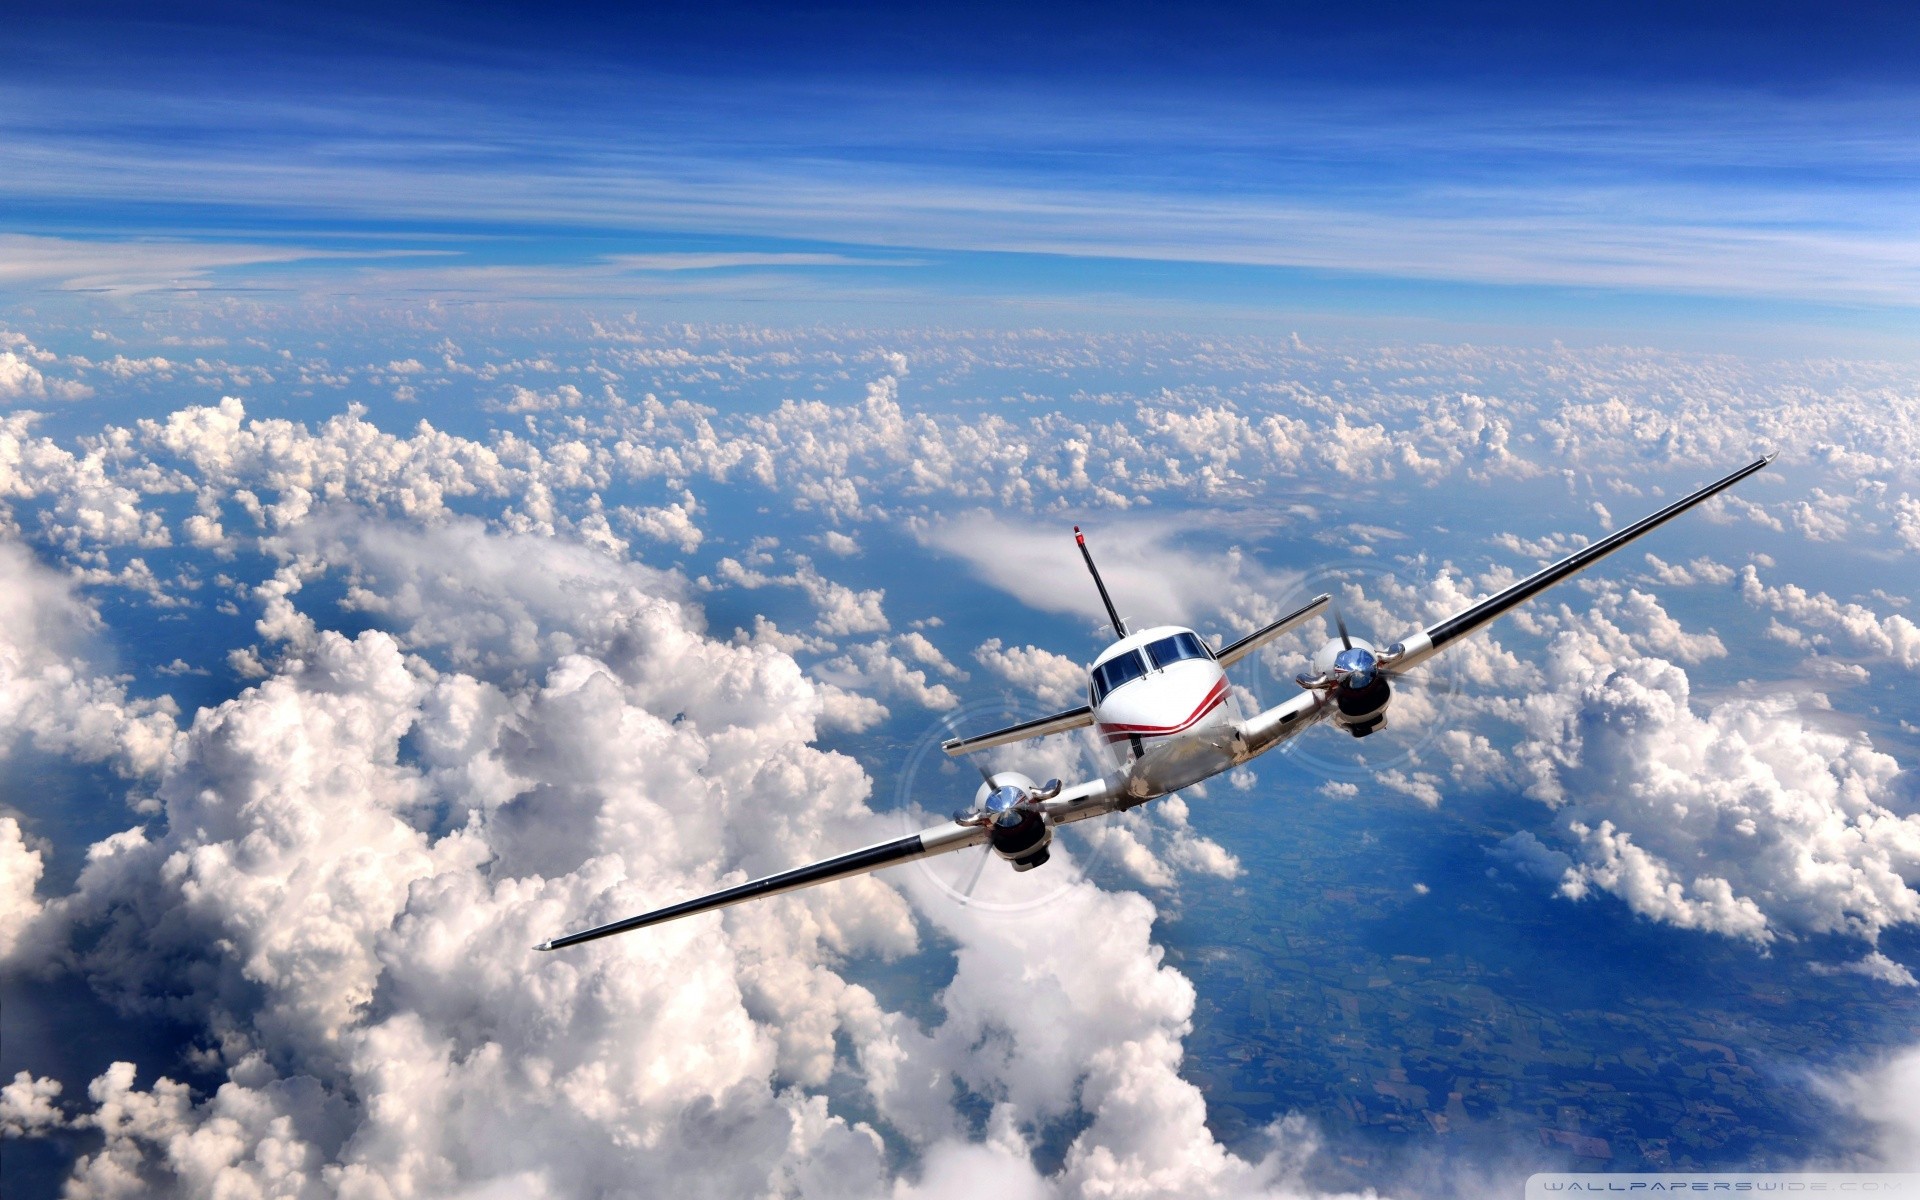 Бесплатное фото Самолет в облачном небе